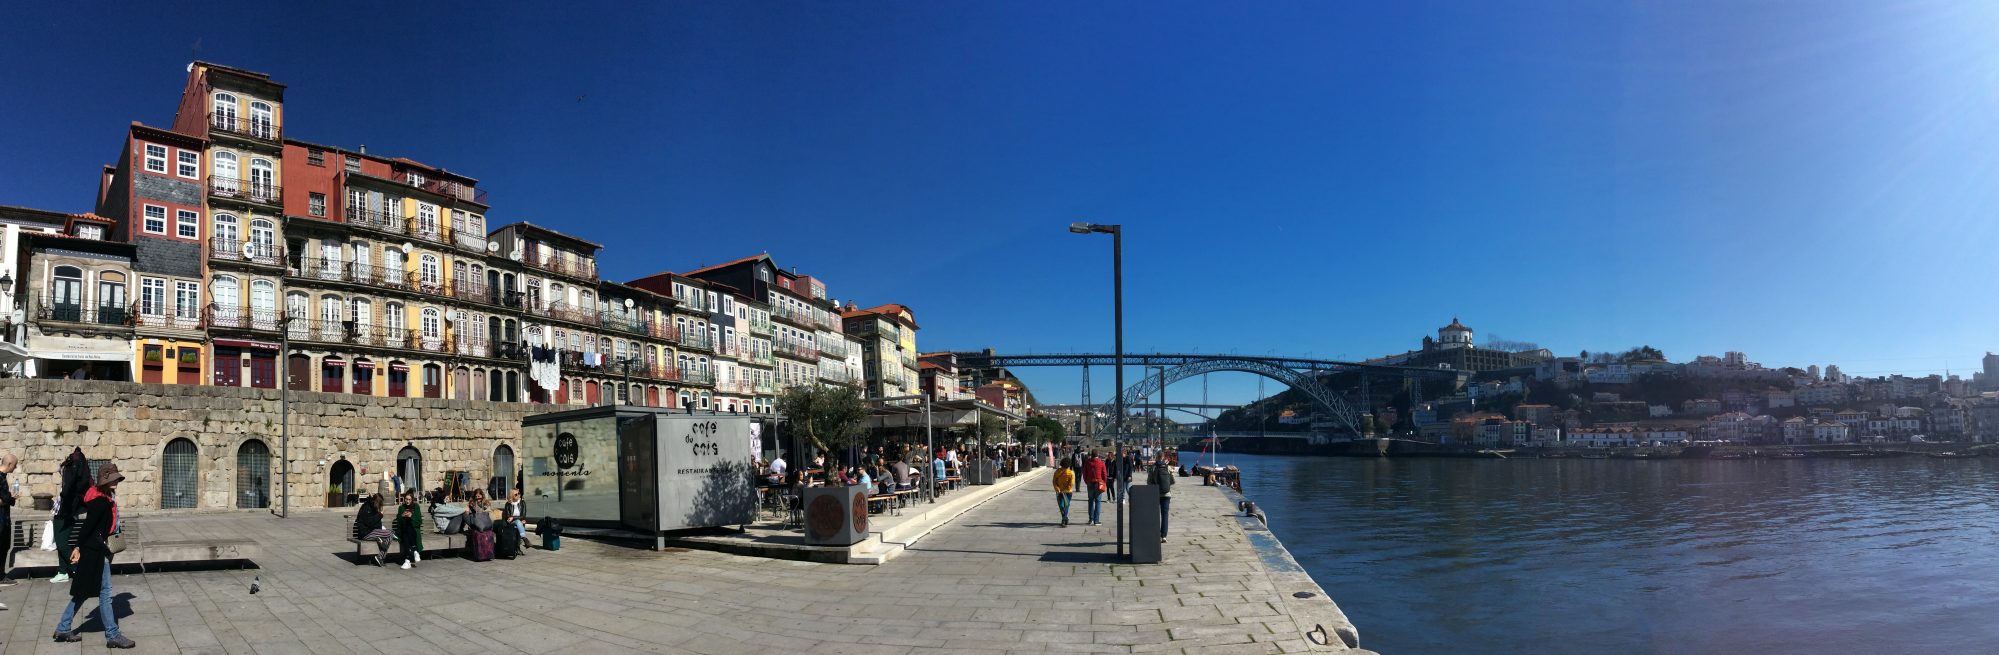 Ribeira, Duoro river front, Porto, Portugal